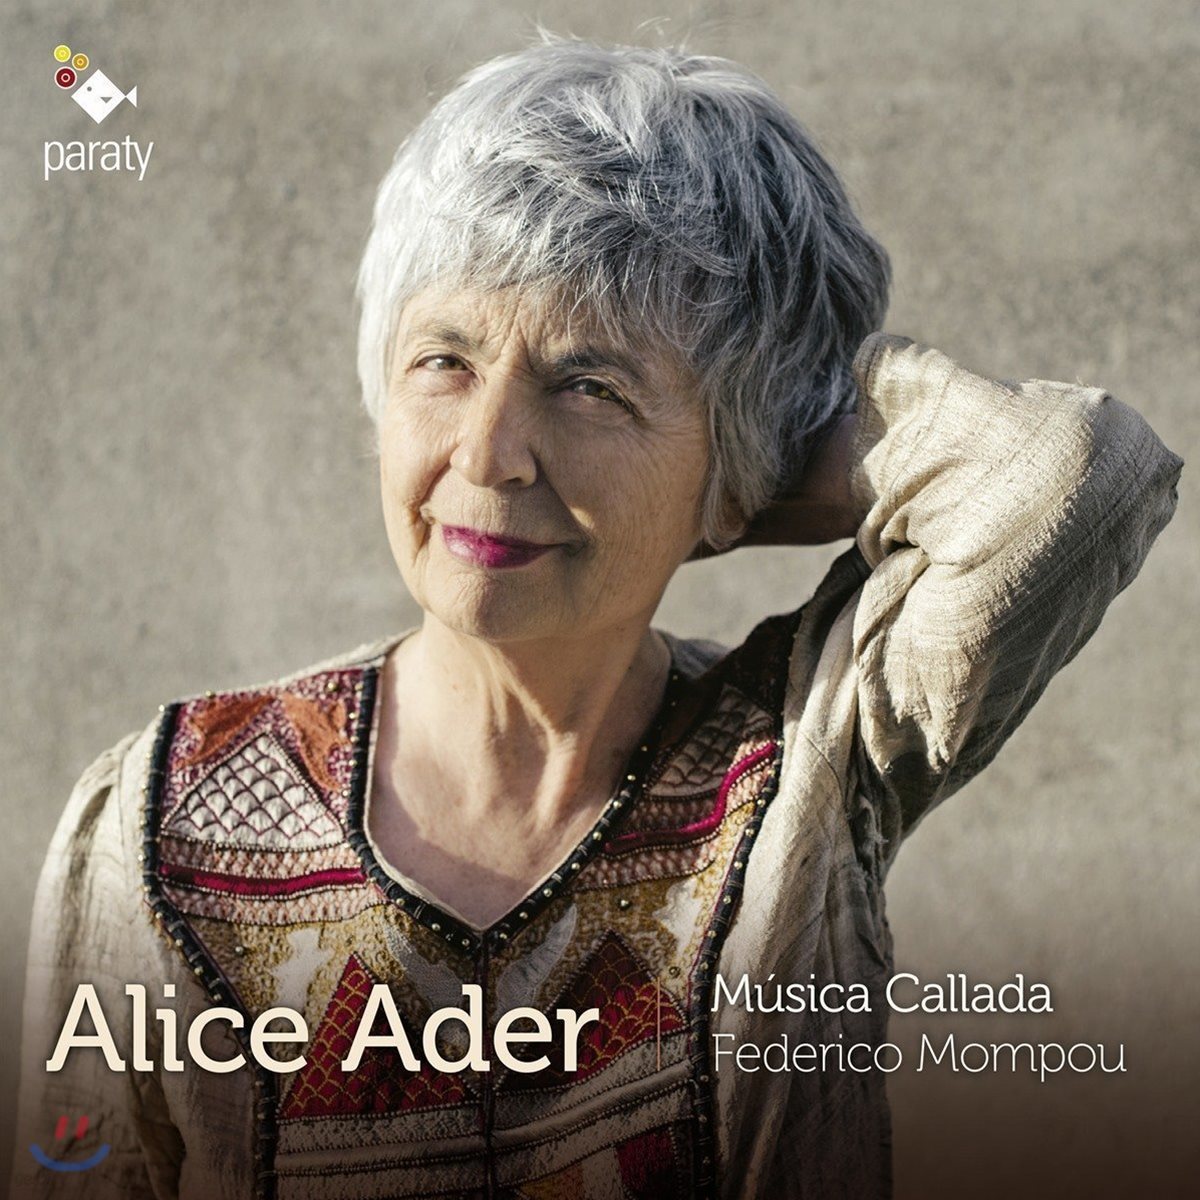 Alice Ader 페데리코 몸푸: 침묵의 음악, 풍경 (Federico Mompou: Musica Callada)